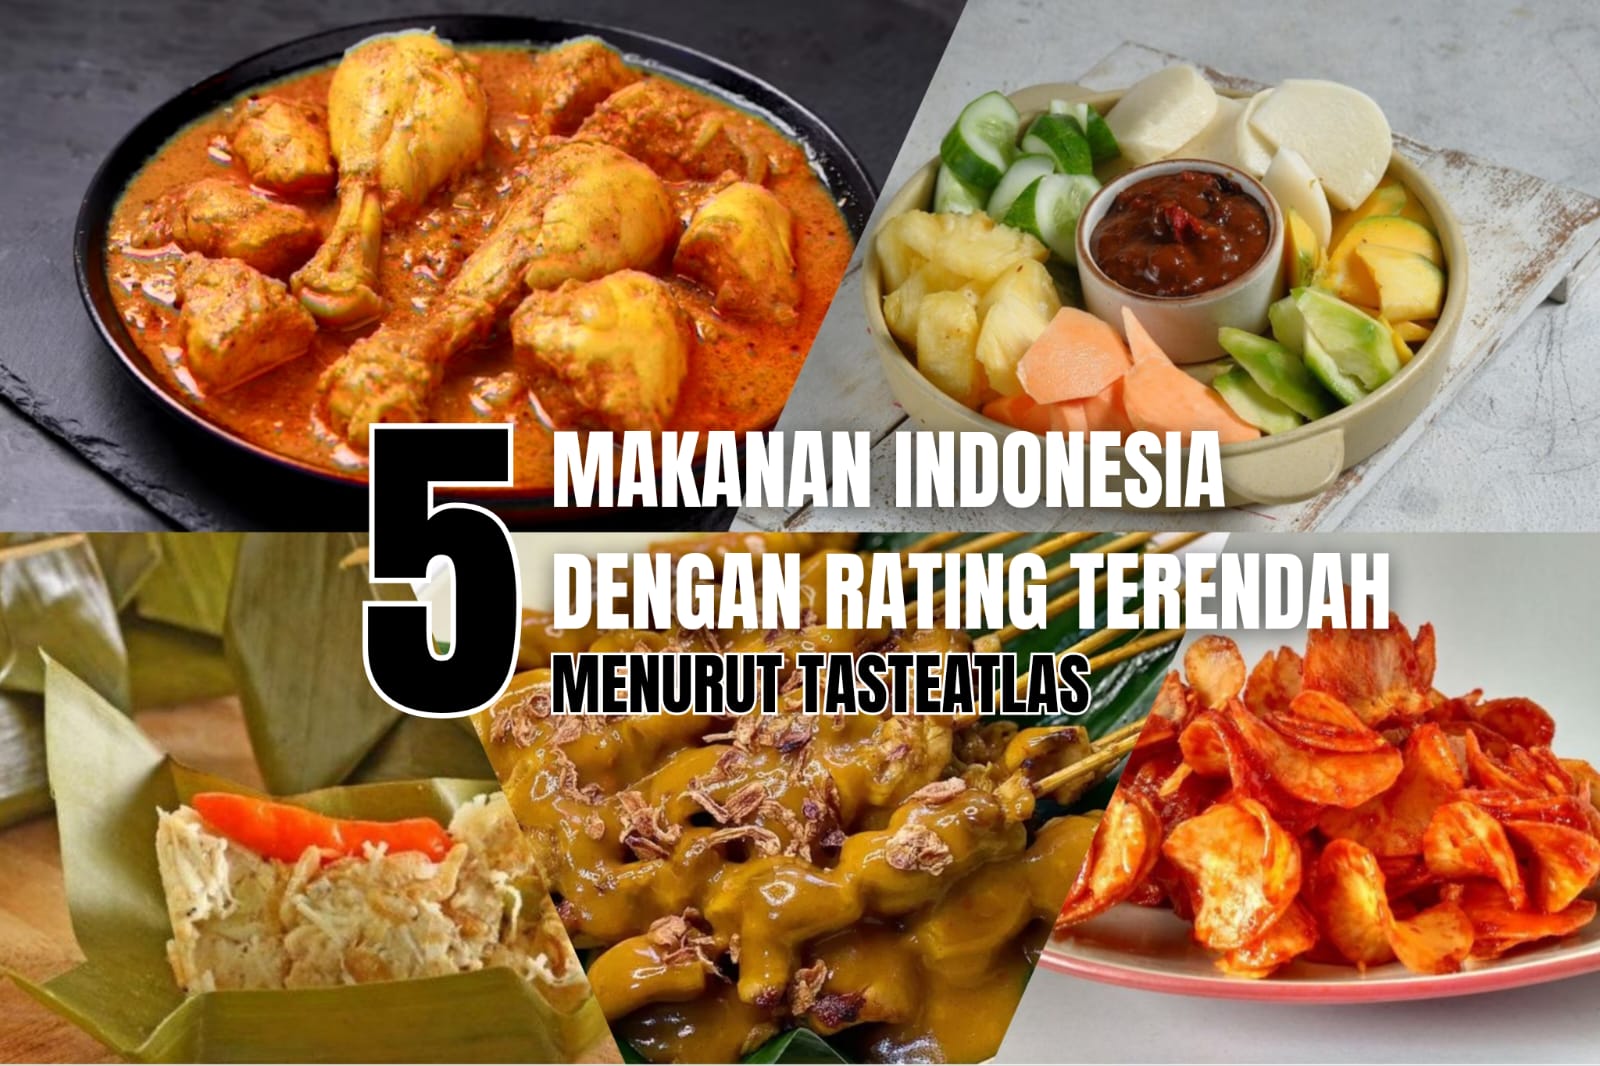 5 Makanan Indonesia dengan Rating Terendah Menurut TasteAtlas, Ada Makanan Favoritmu?